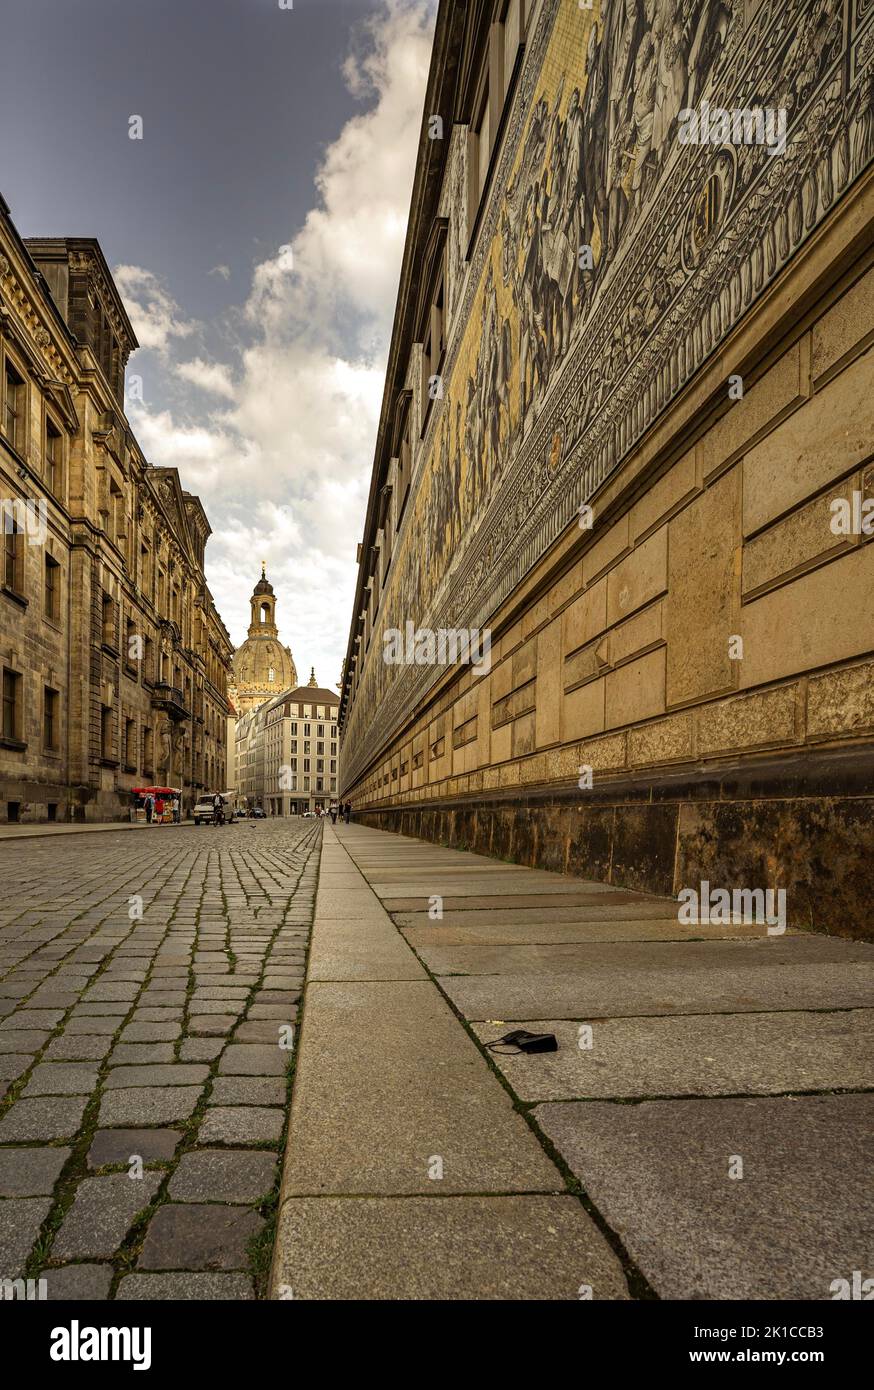 Strade storiche a Dresda con la maschera Corona al suolo, Dresda, Germania Foto Stock